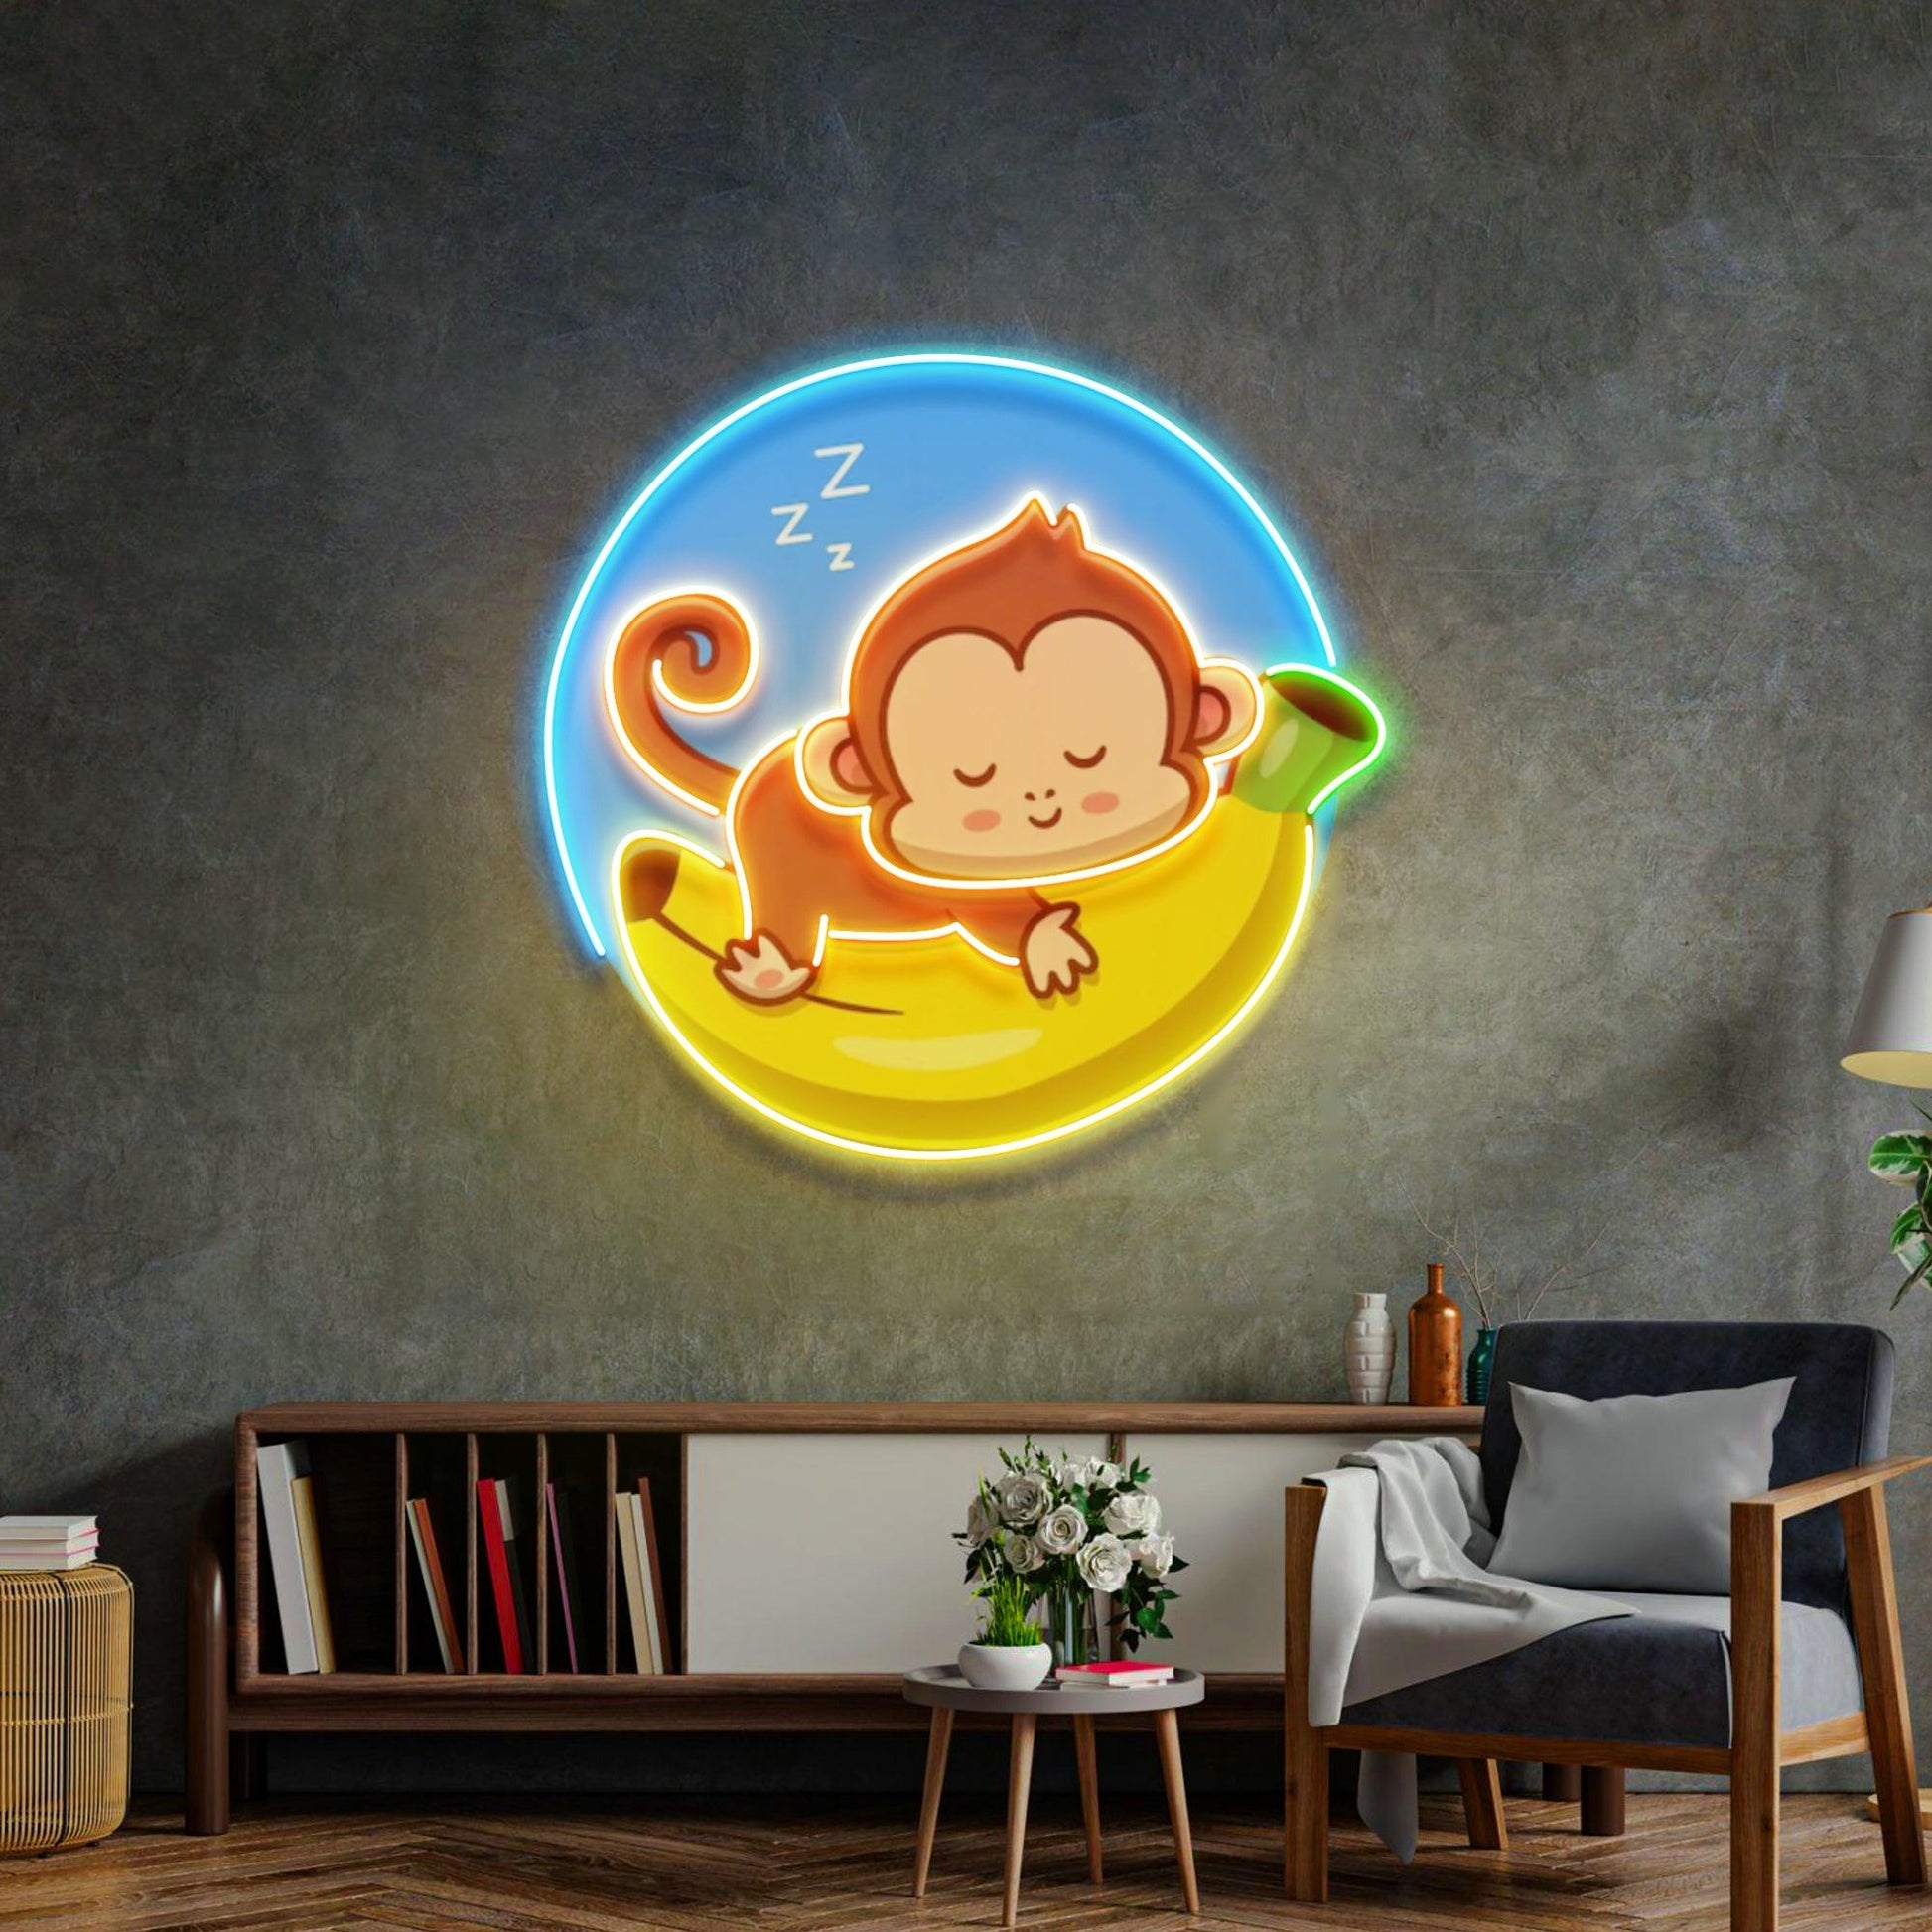 Sleeping Monkey Led Neon Acrylic Artwork - Neonzastudio